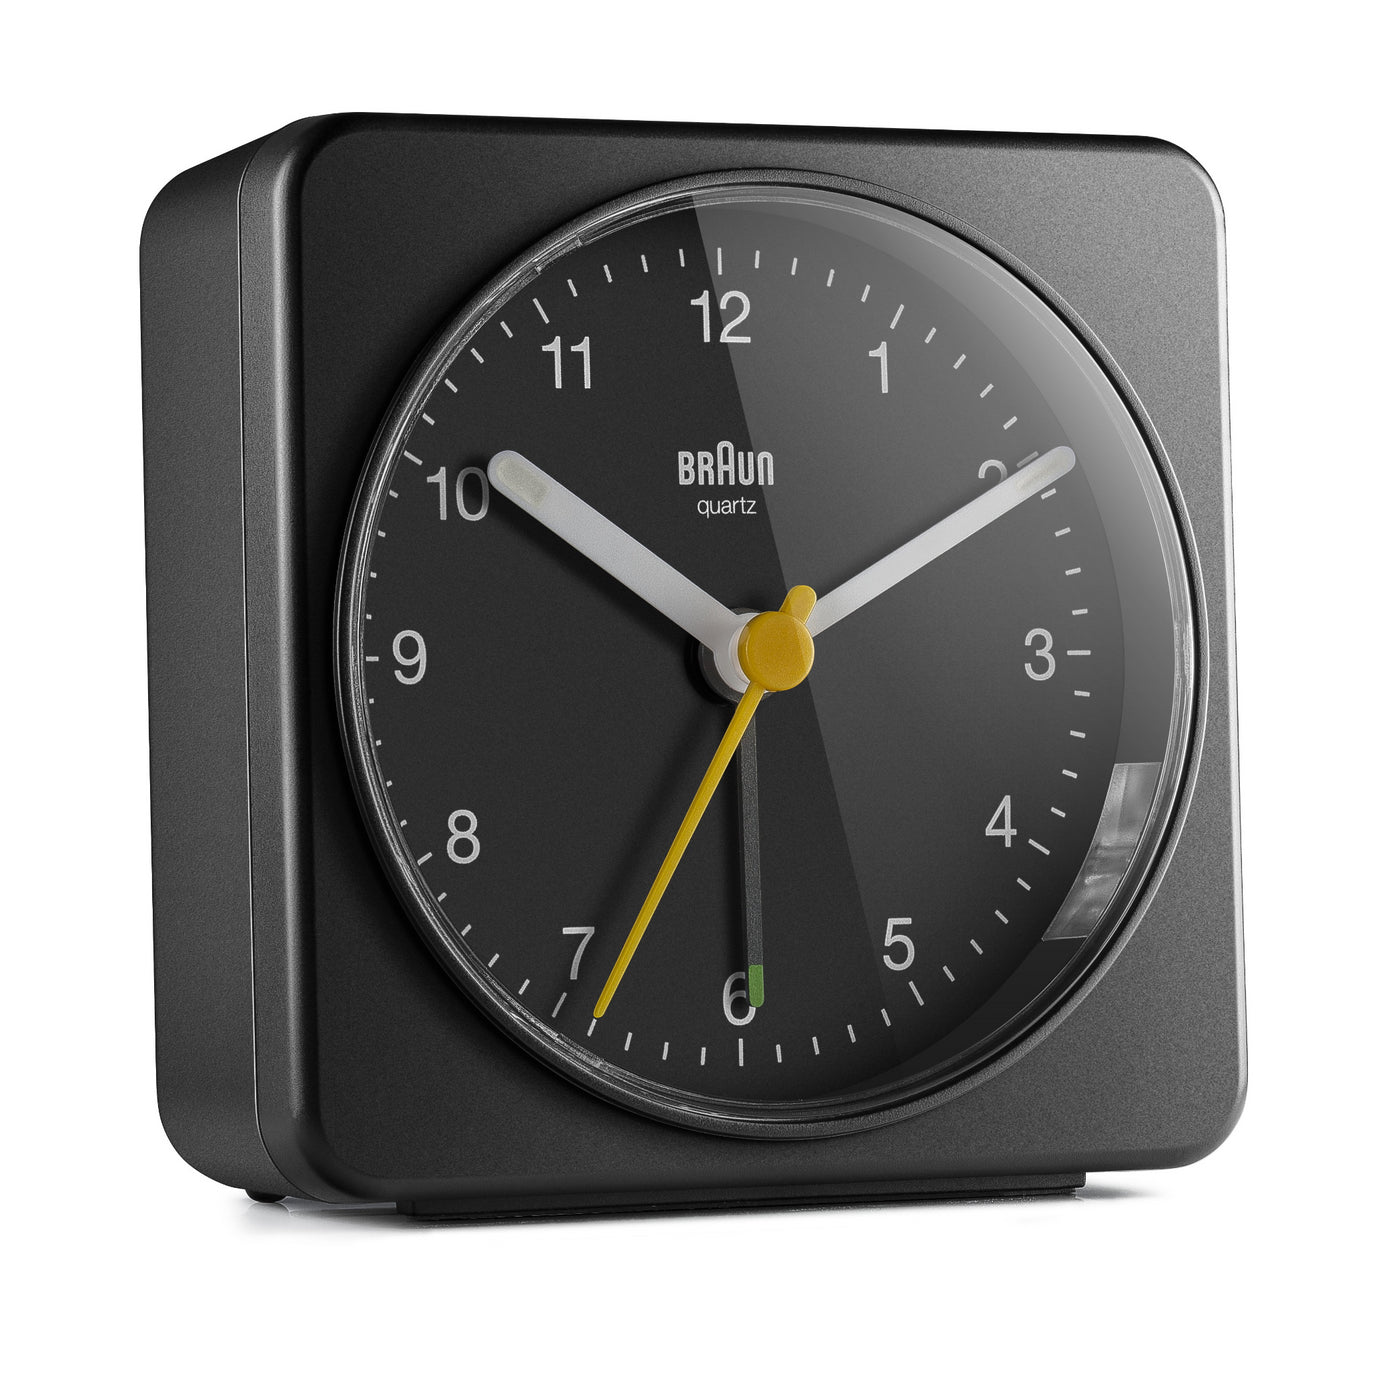 Braun Large Travel Analogue Alarm Clock – Black/Black